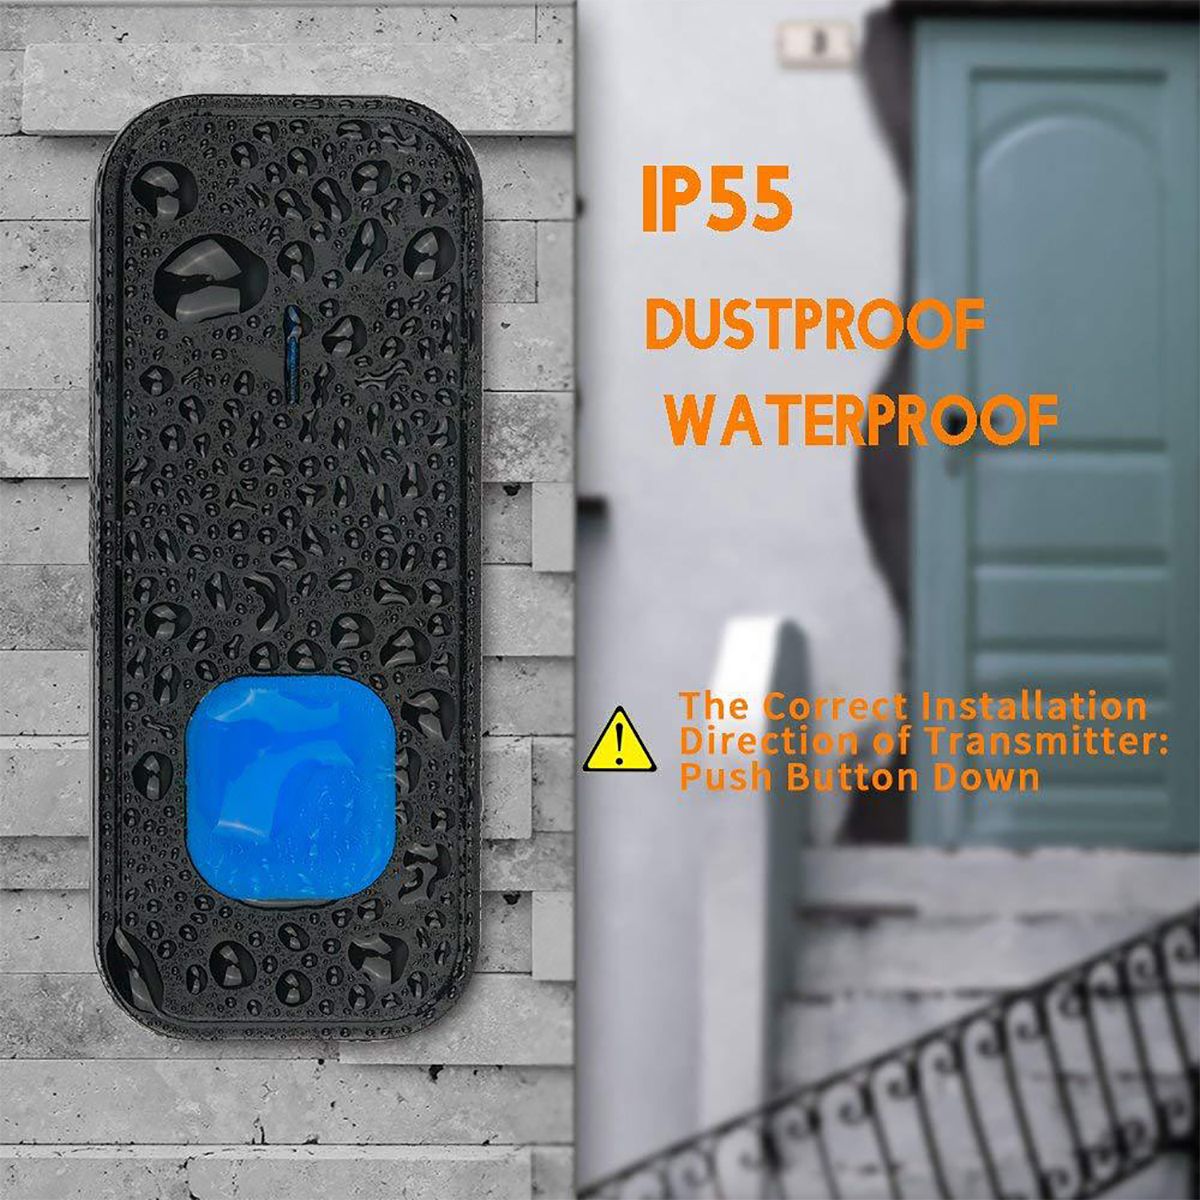 300M-Range-Wireless-LED-Waterproof-Door-Bell-Cordless-55-Chime-Doorbell-1429425